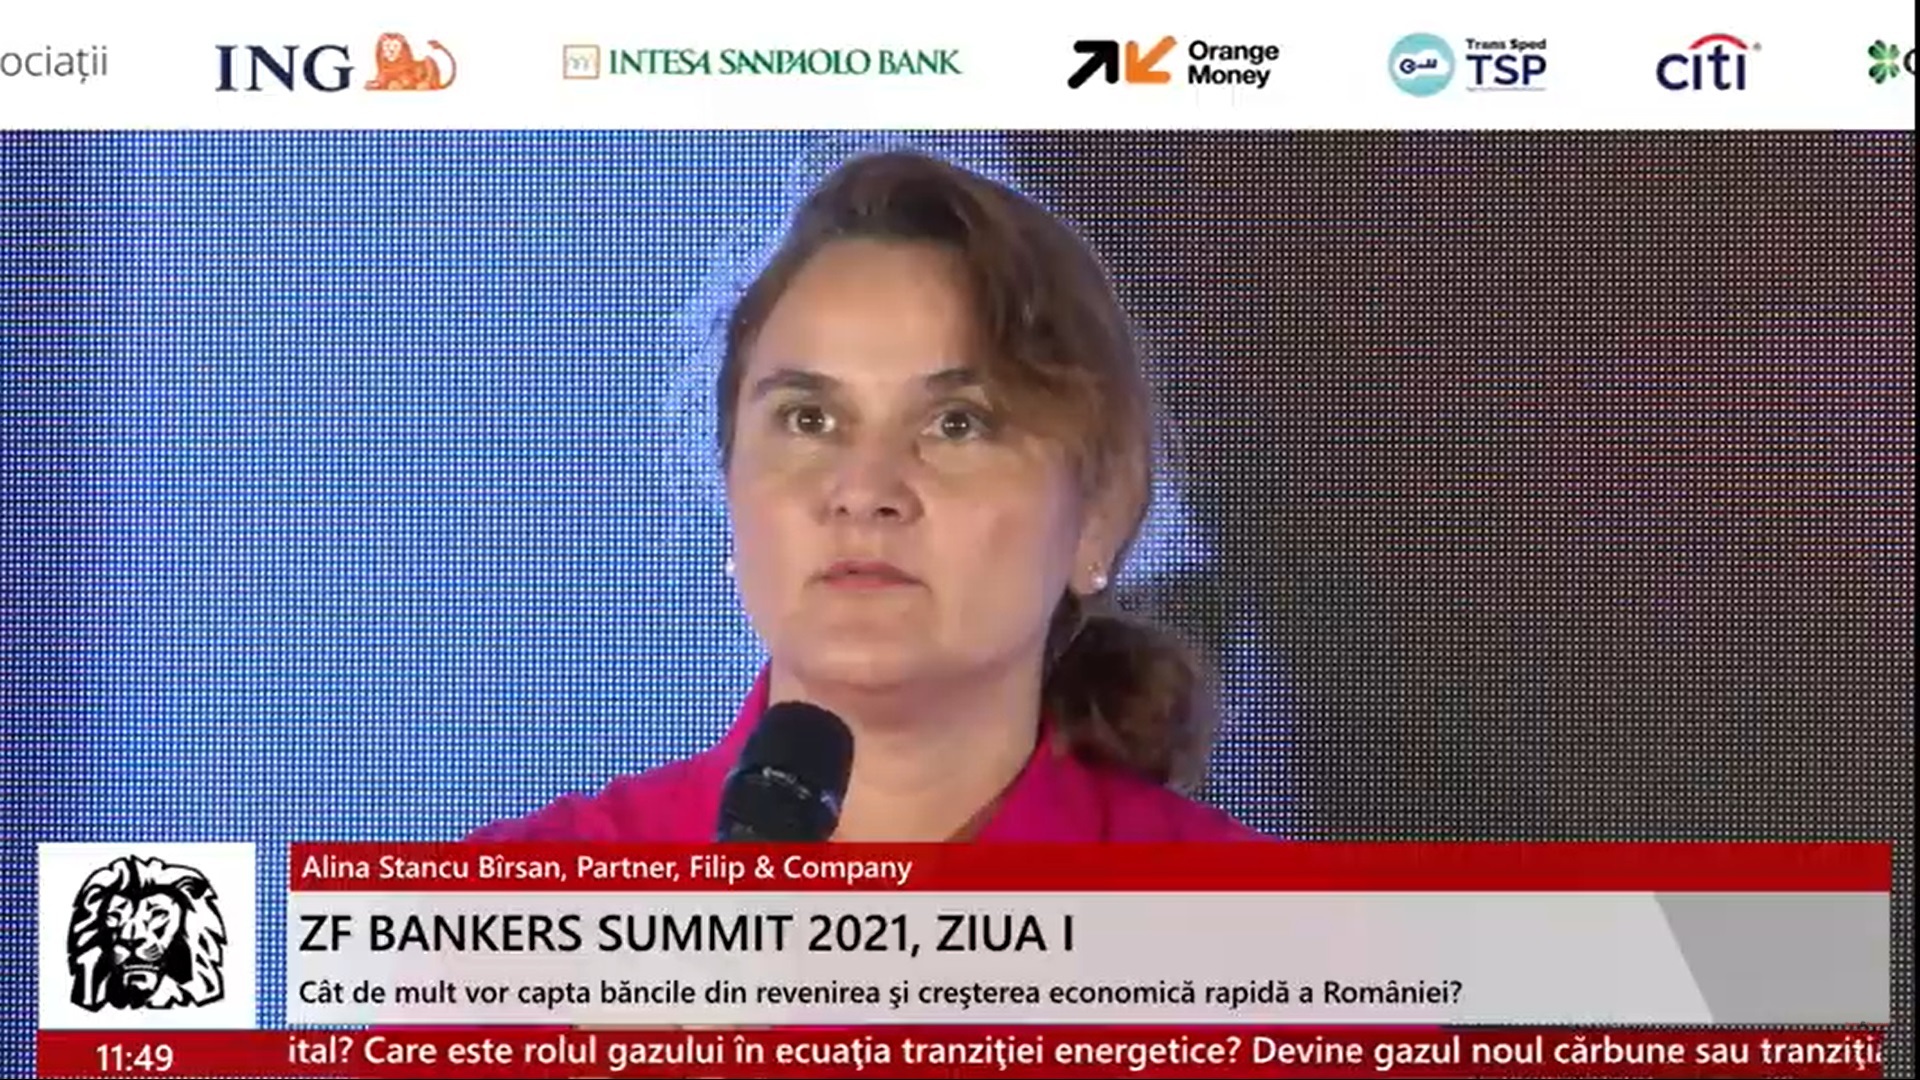 Alina Stancu Bîrsan, partener, Filip & Company: Băncile trebuie să strângă surse de finanţare, datorii eligibile care pot să fie folosite ca şi capital în momentul în care se confruntă cu situaţii dificile, deci au fost crescute pragurile la care trebuie să ajungă începând din acest an